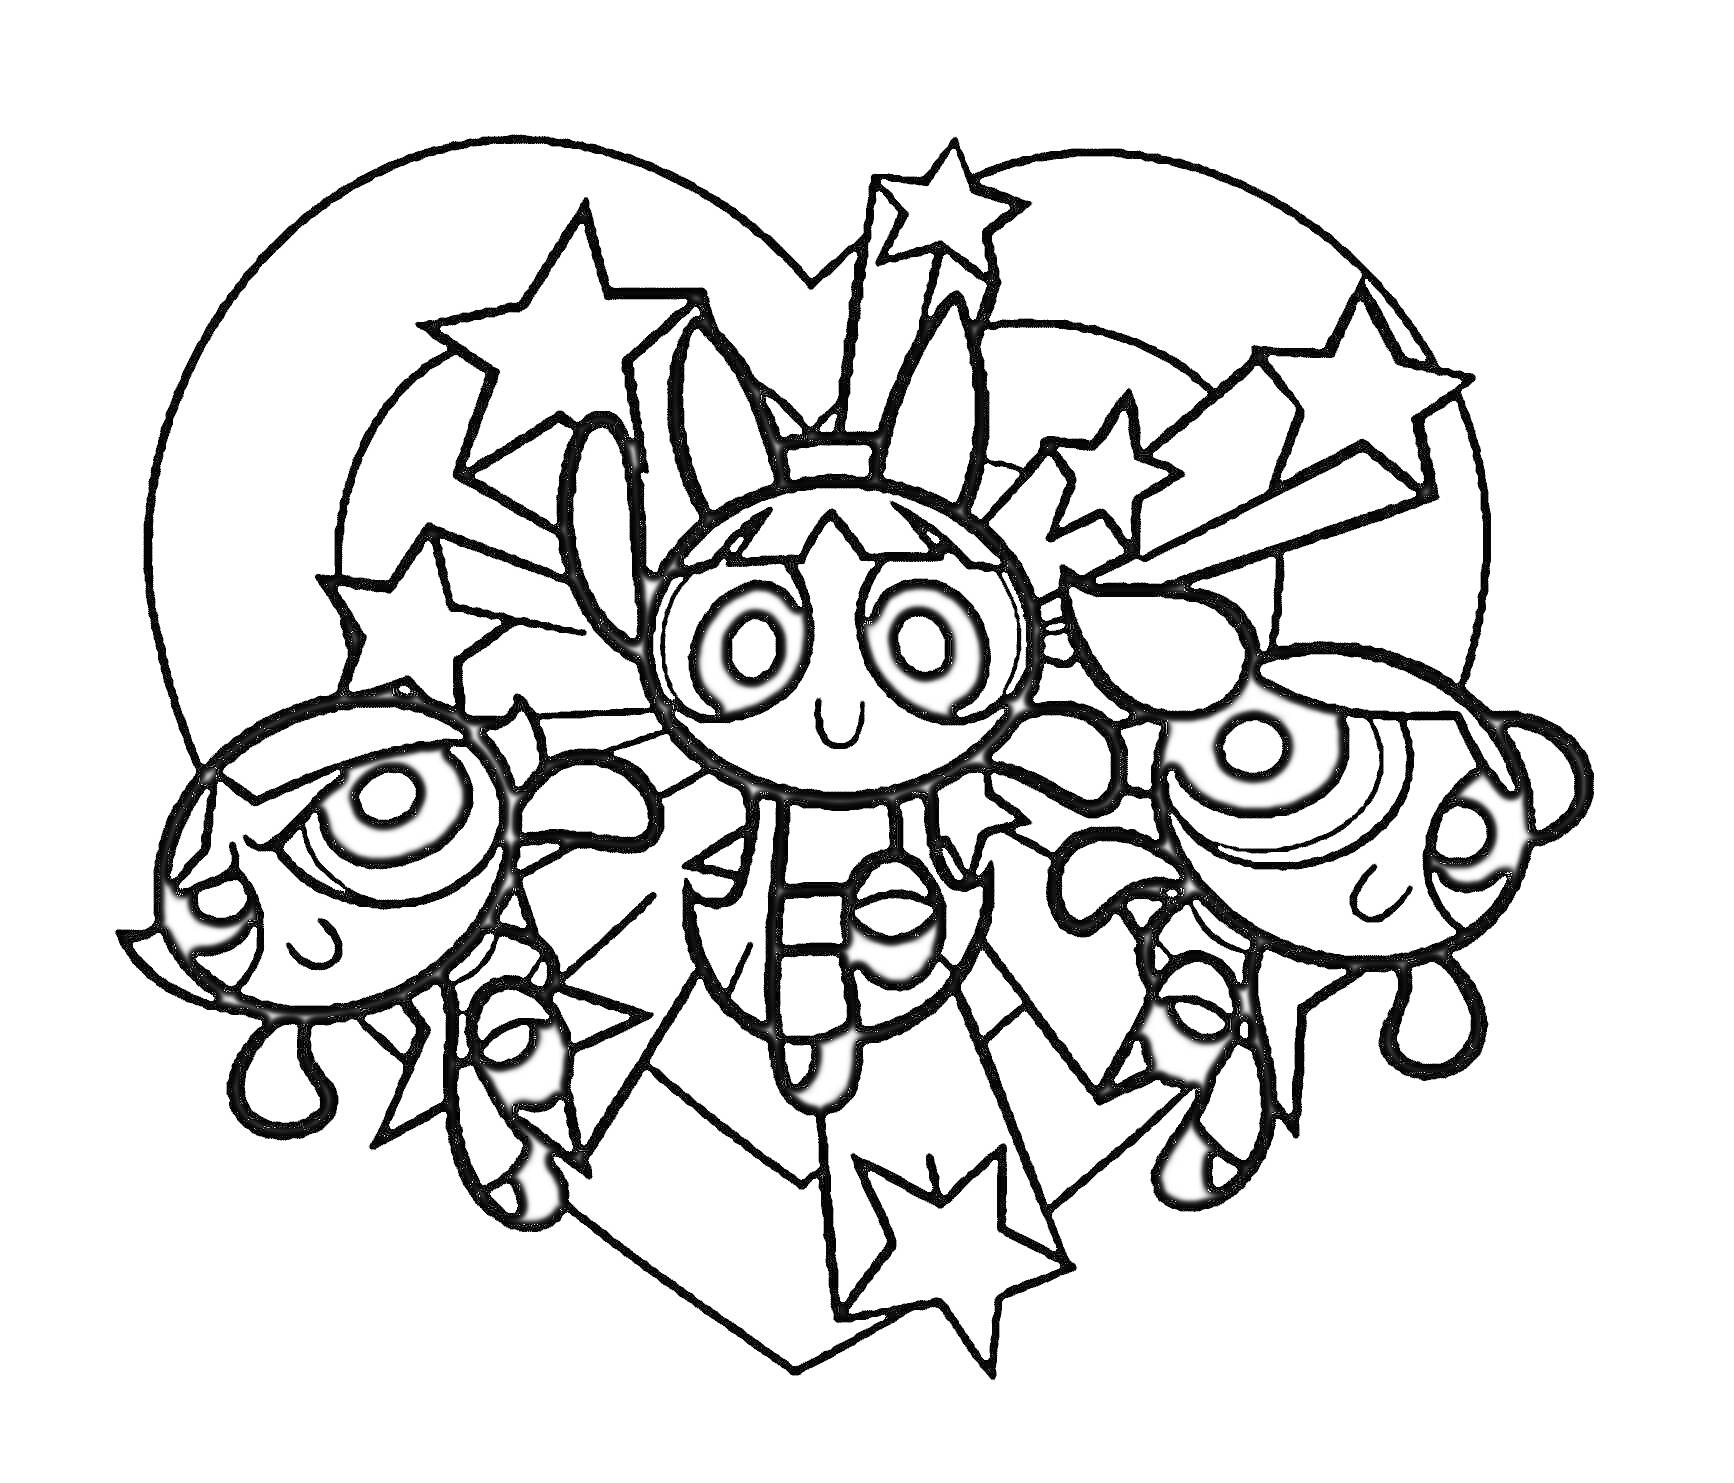 Раскраска Суперкрошки - три персонажа на фоне звезд и сердца